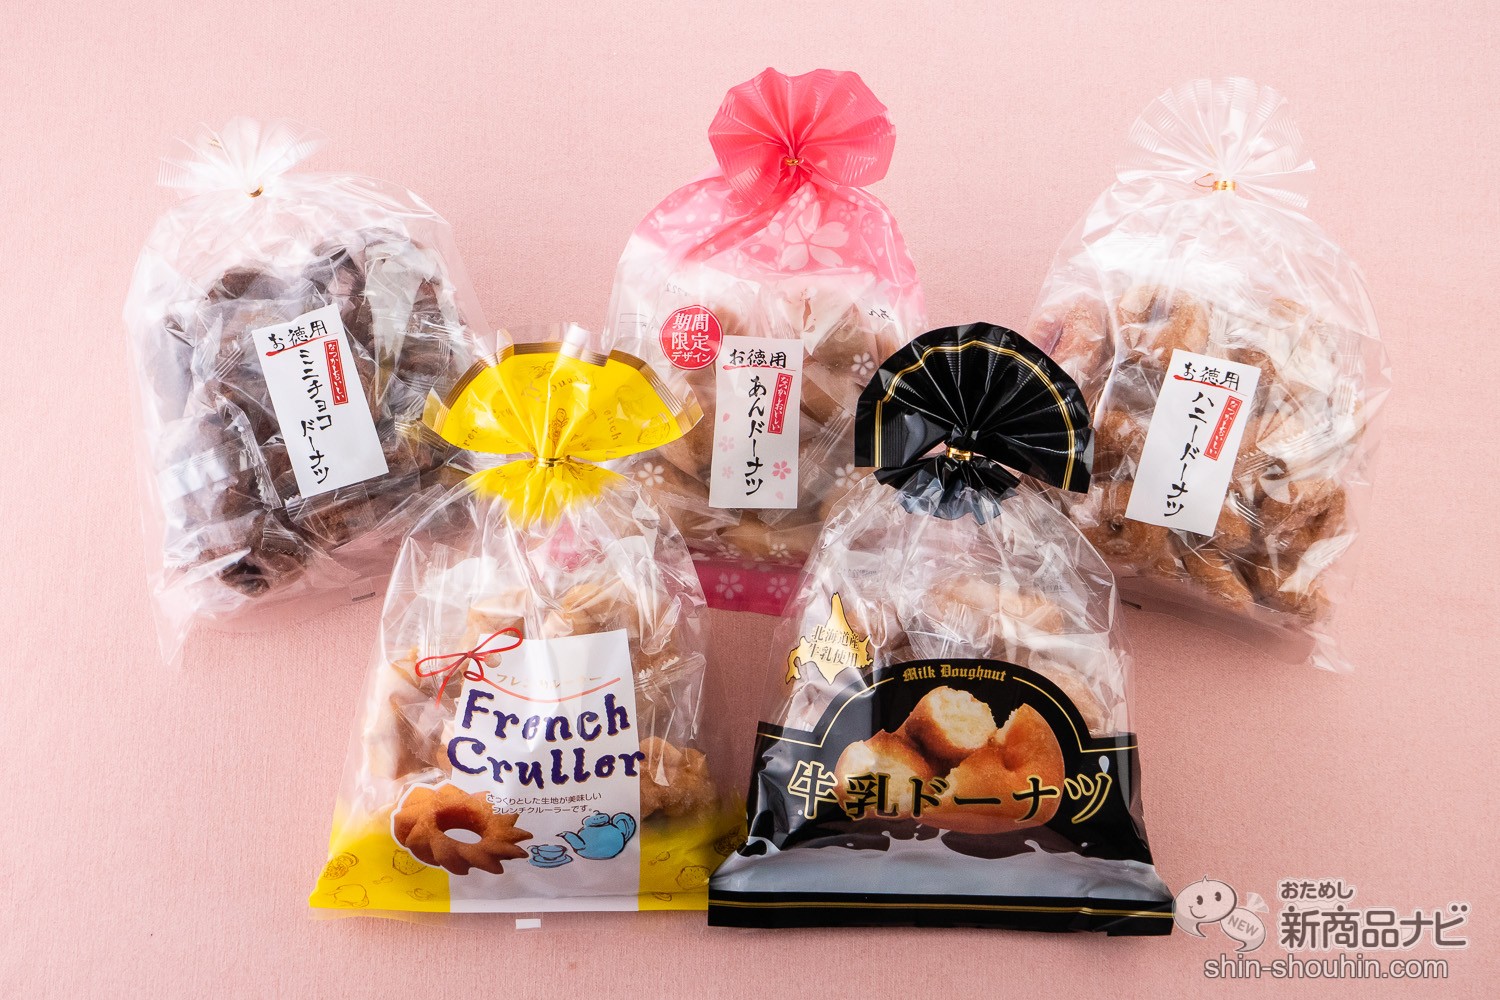 おためし新商品ナビ » Blog Archive » 小さくて食べやすい「ヤングドーナツ」で有名な宮田製菓は『大容量のドーナツ』も販売中！  そんな大袋シリーズの豊富なラインナップをたっぷりと紹介！